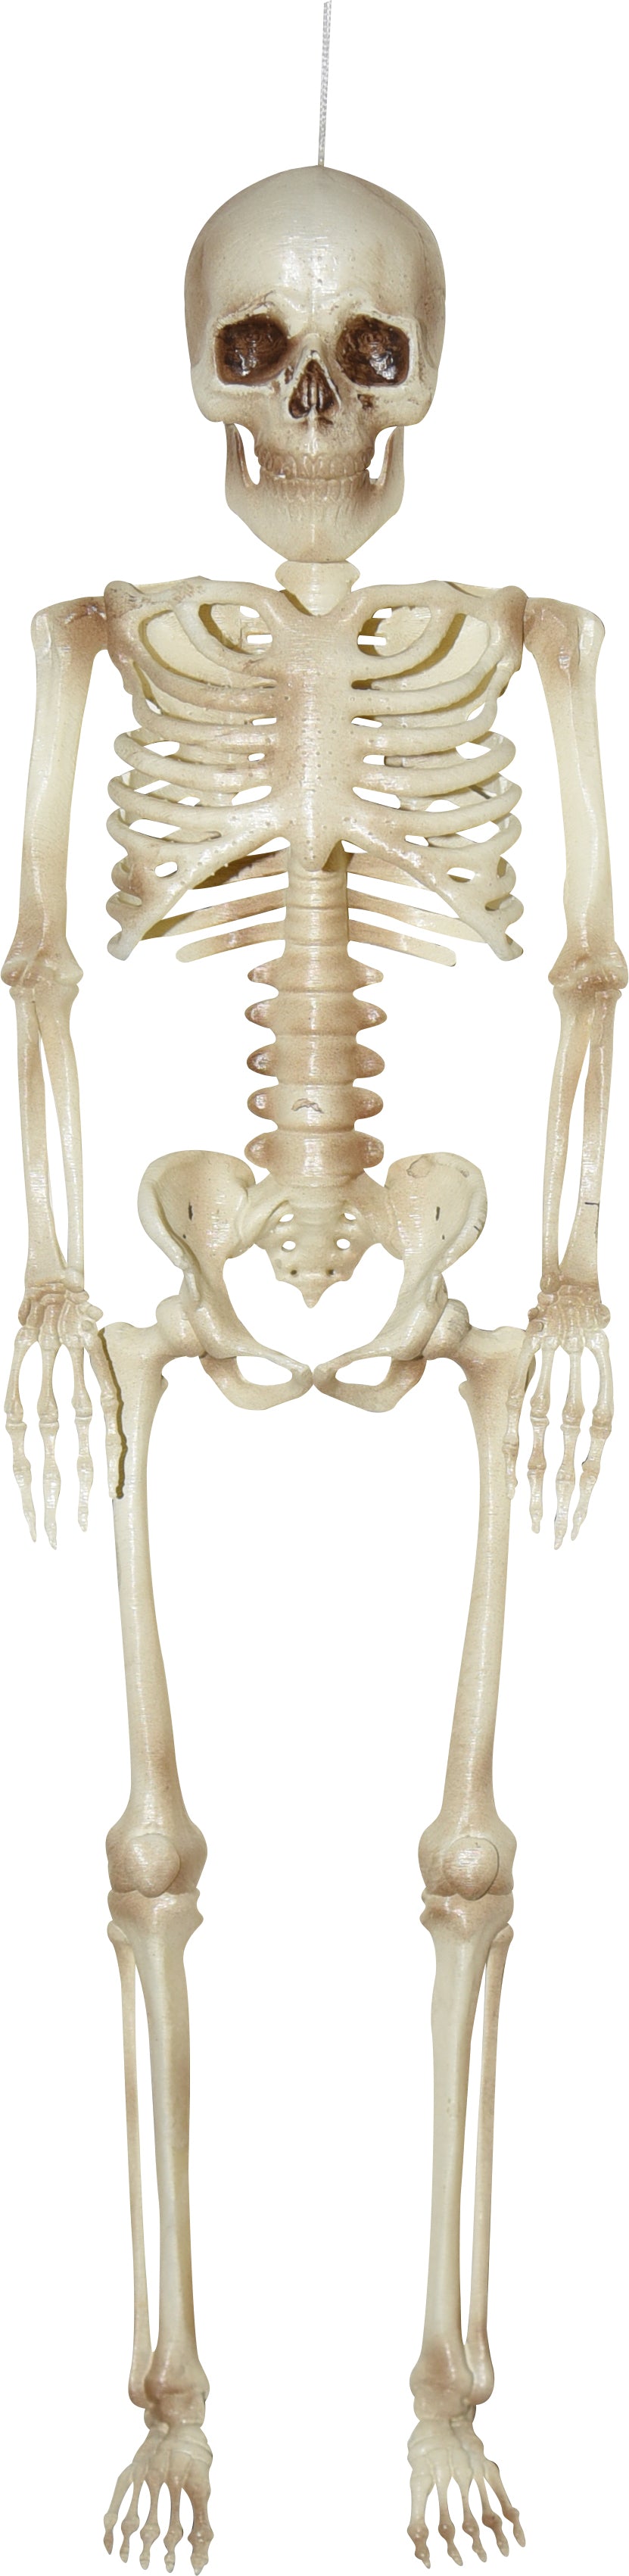 16" Hanging Skeleton